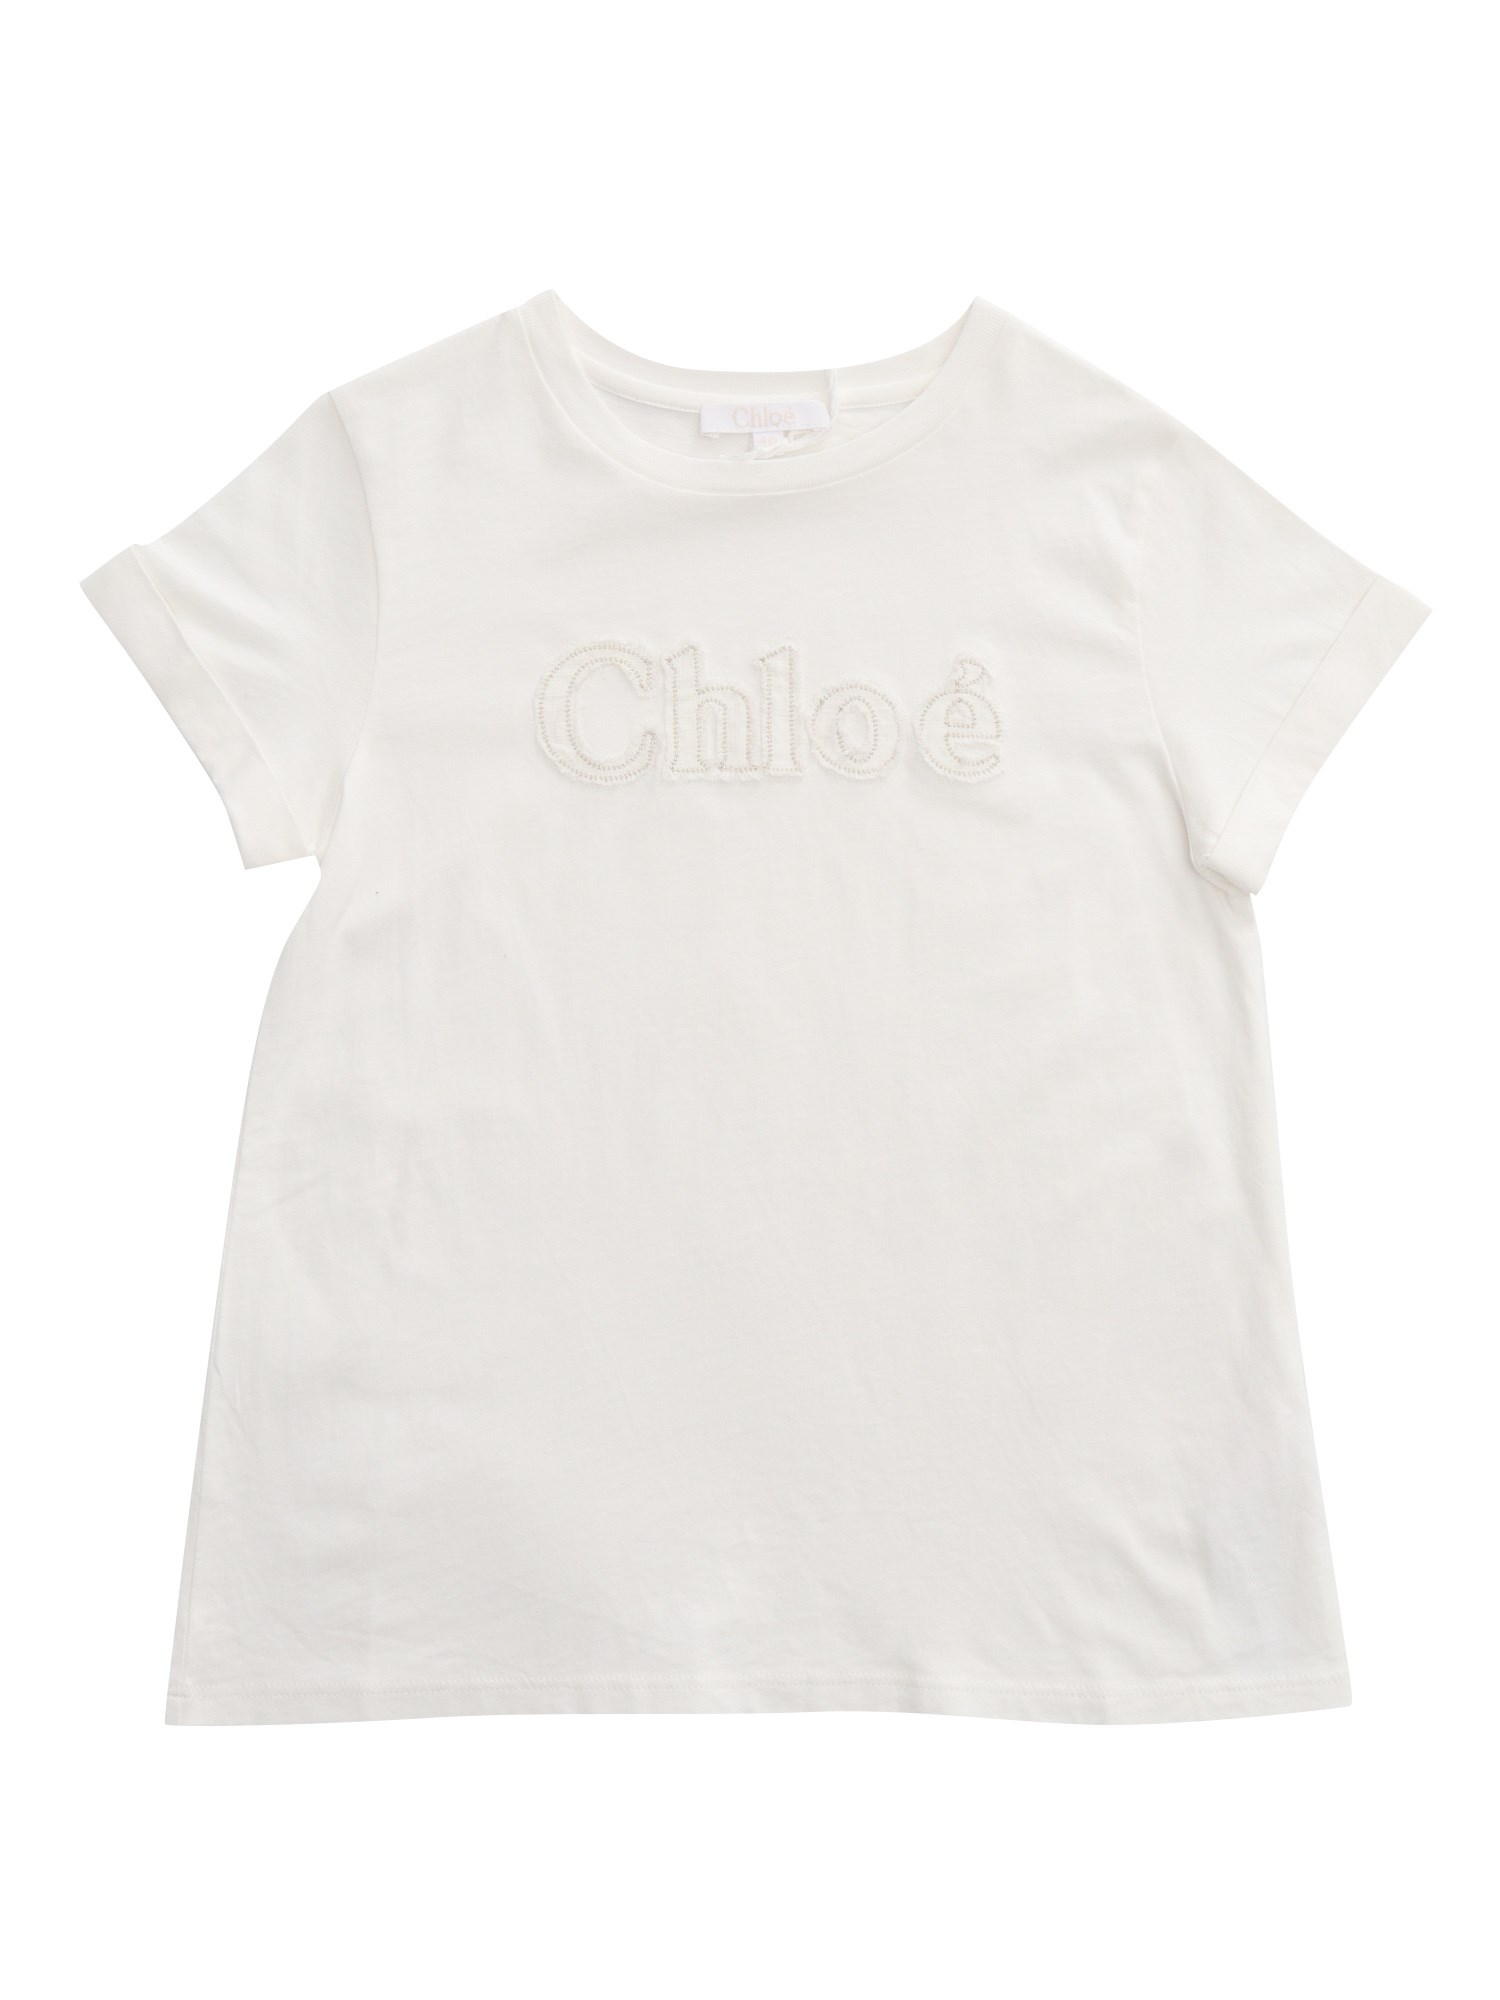 Chloe - Letter C Logo by Tenuart